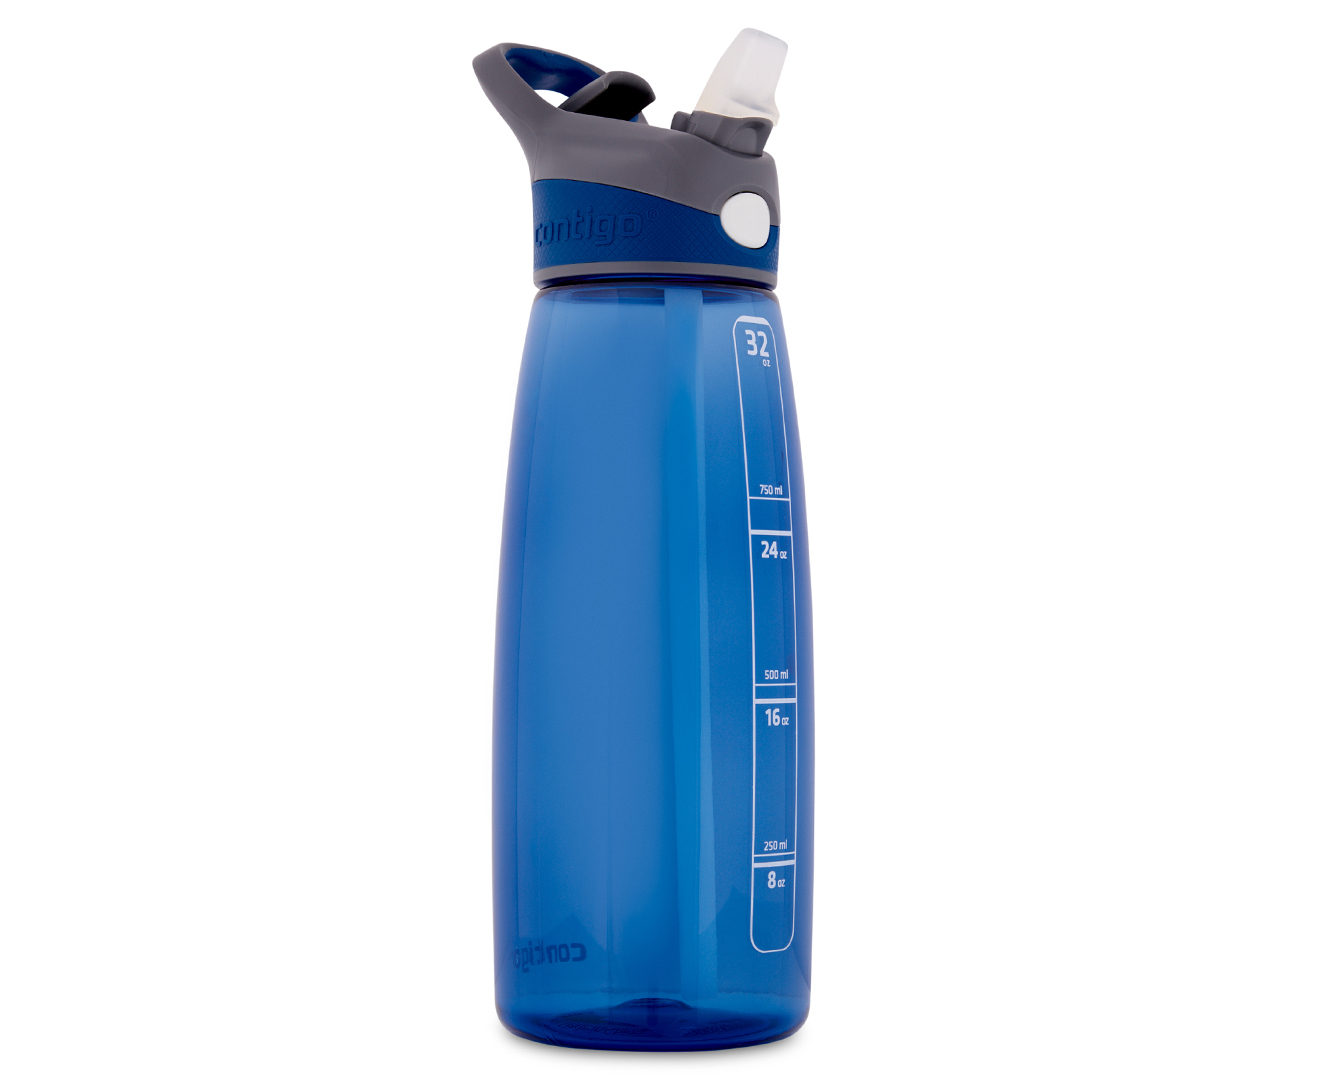 Contigo Addison Autoseal Water Bottle, 32oz, Monaco - Shop Travel